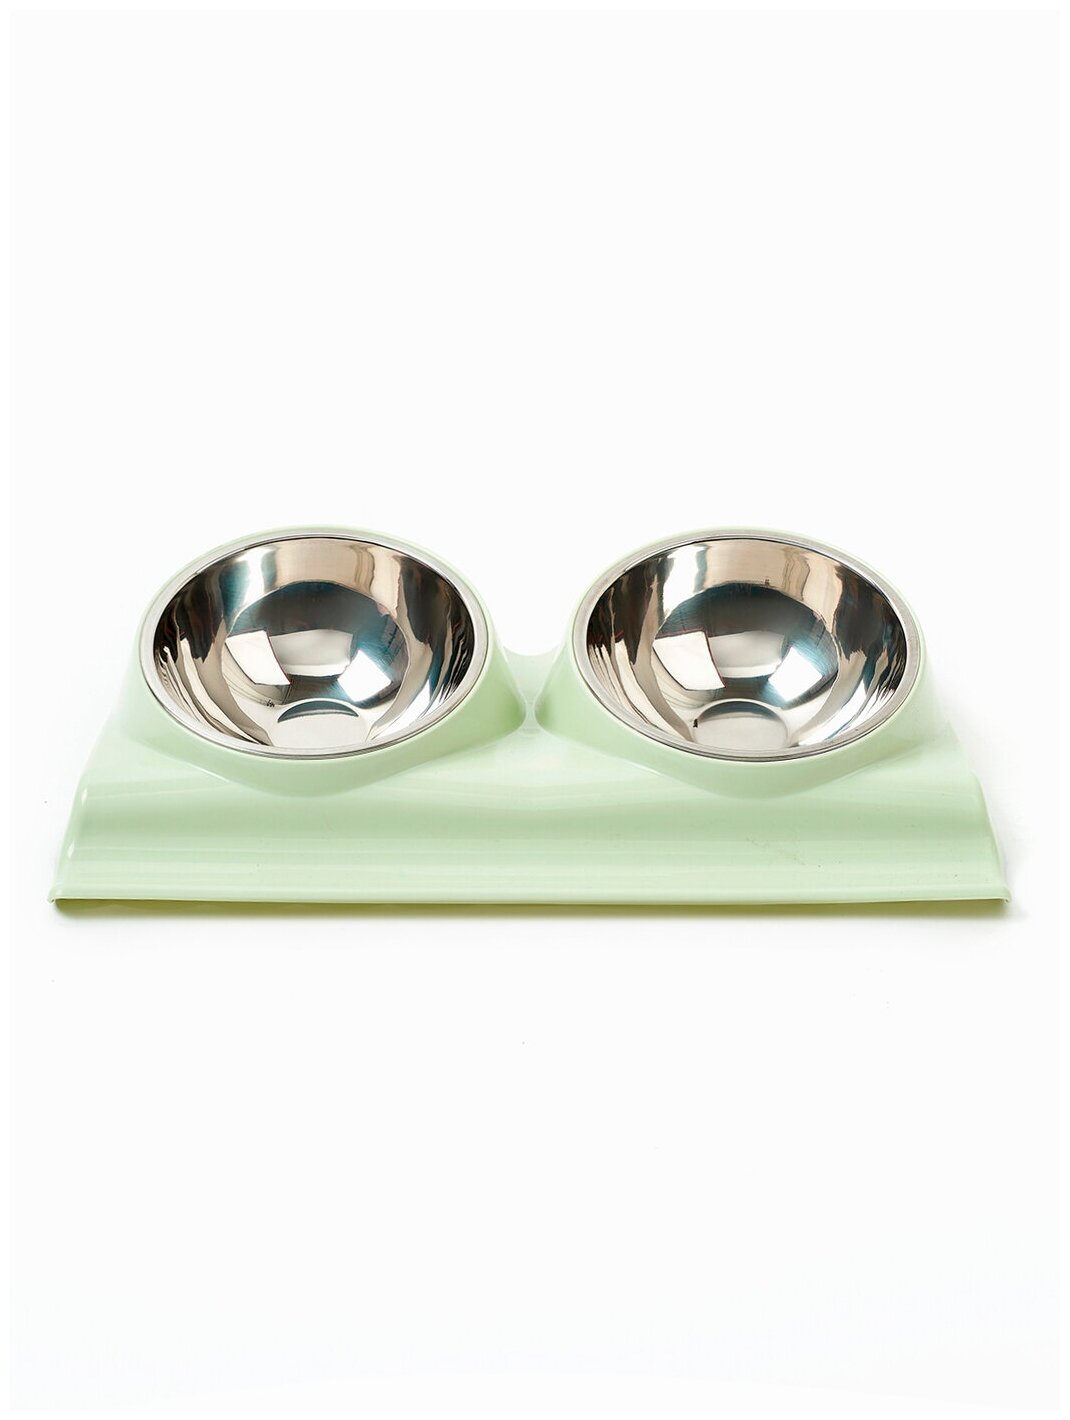 Миска для животных для кошек и собак двойная на подставке, Любимое лакомство 4, цвет: зеленый